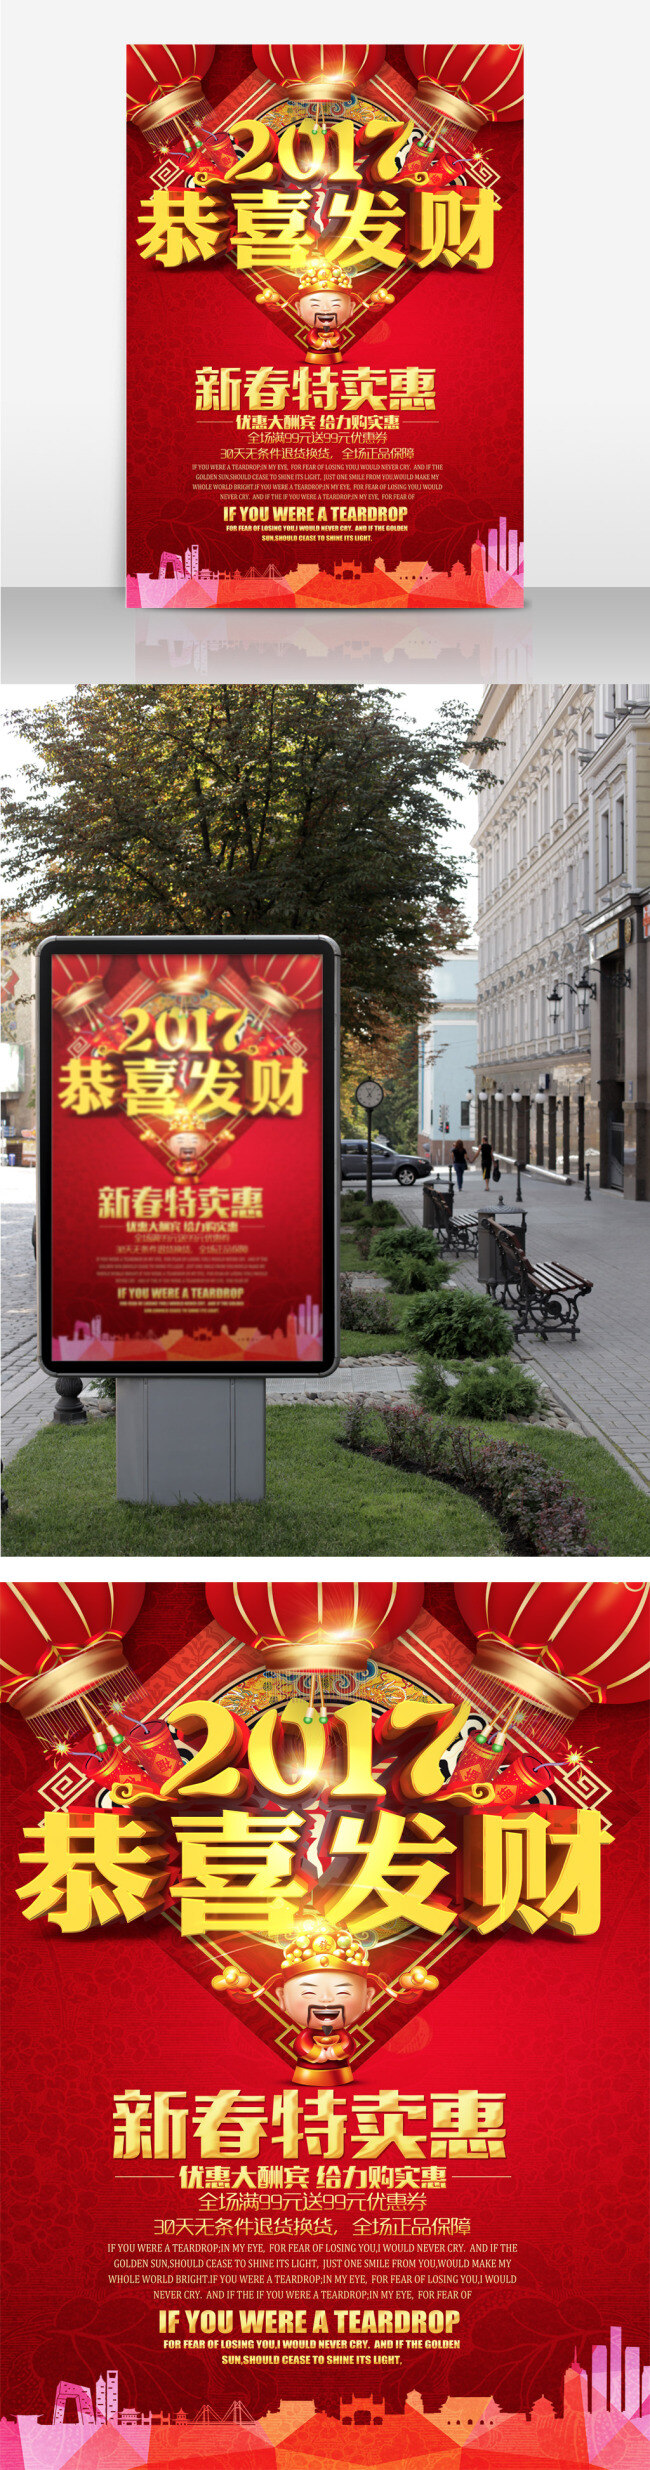 2017 2017鸡年 恭喜发财 喜庆 红色 促销 海报 展板 鸡年 鸡年促销海报